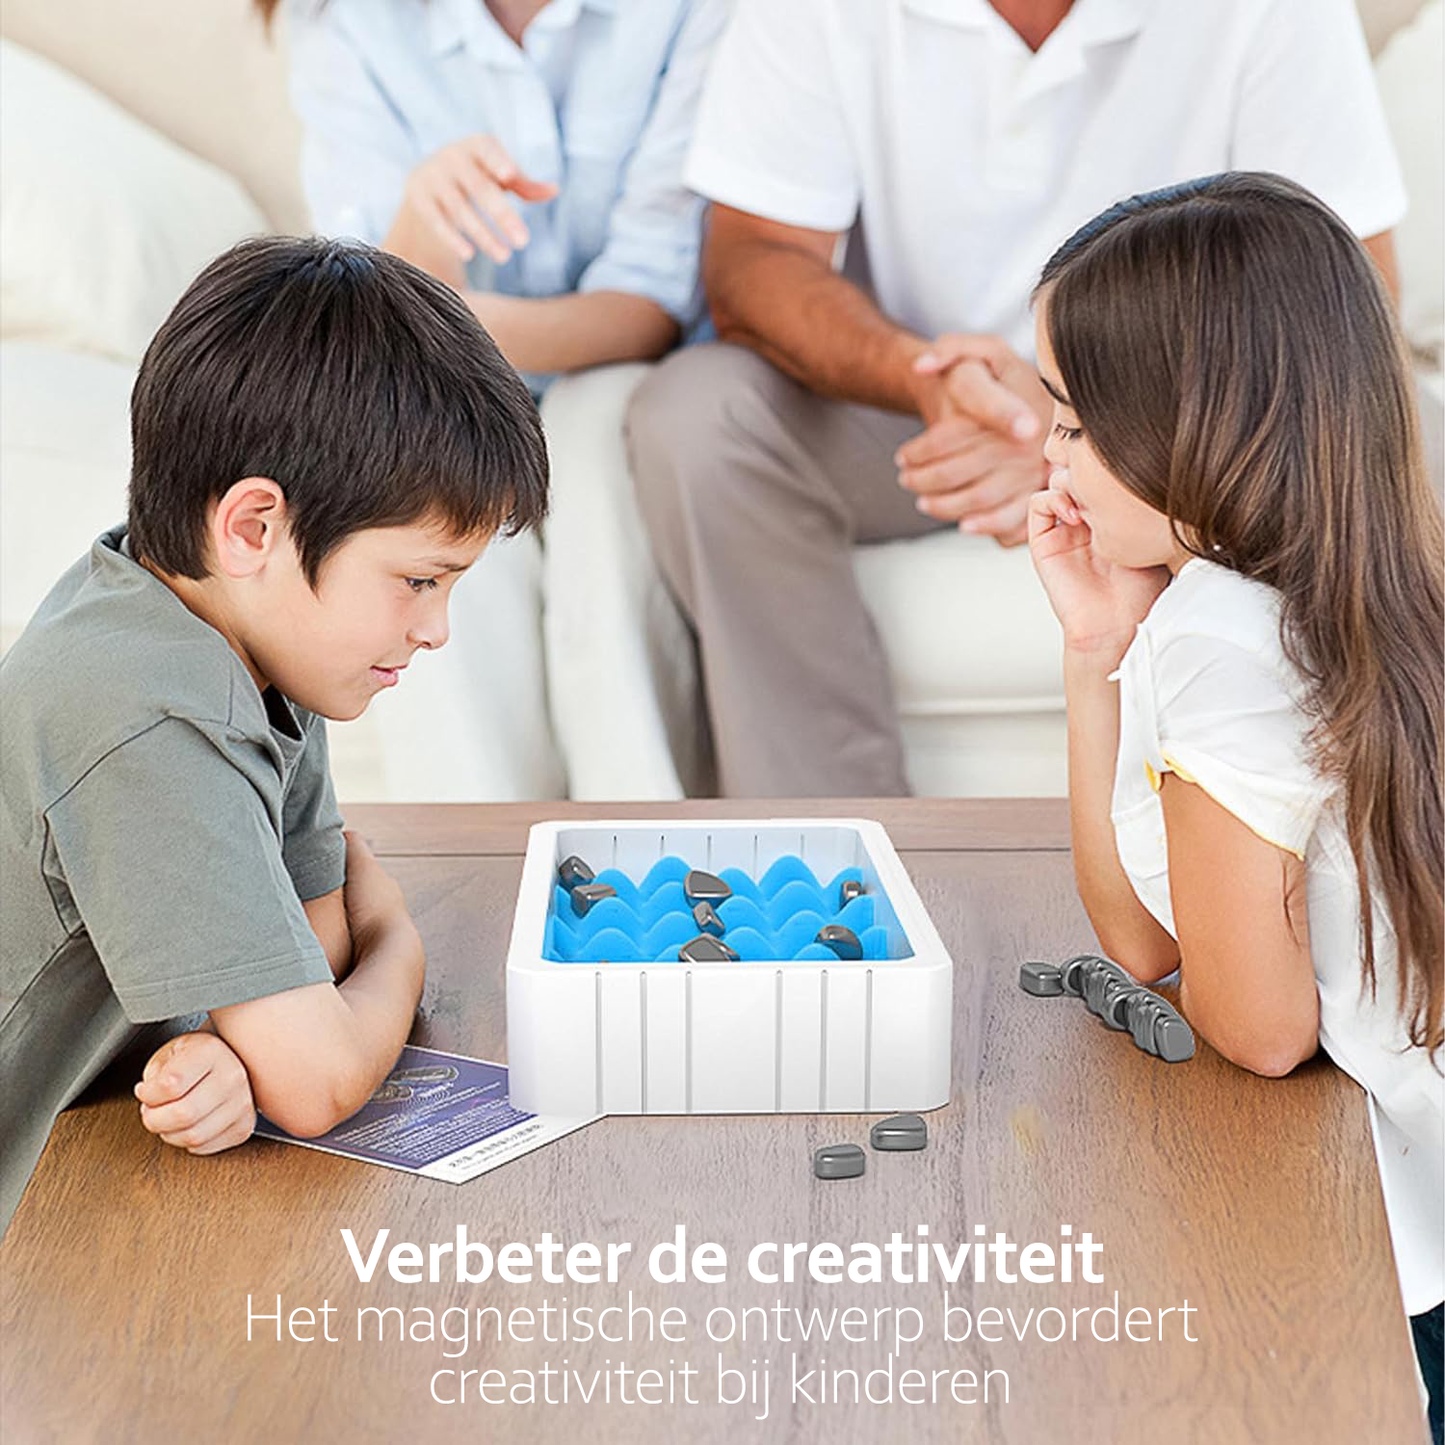 Magnetic Chess Leuk en Leerzaam Schermloos Interactief Stenen Spel Speelgoed voor Kinderen dat Cognitieve Vaardigheden Bevordert